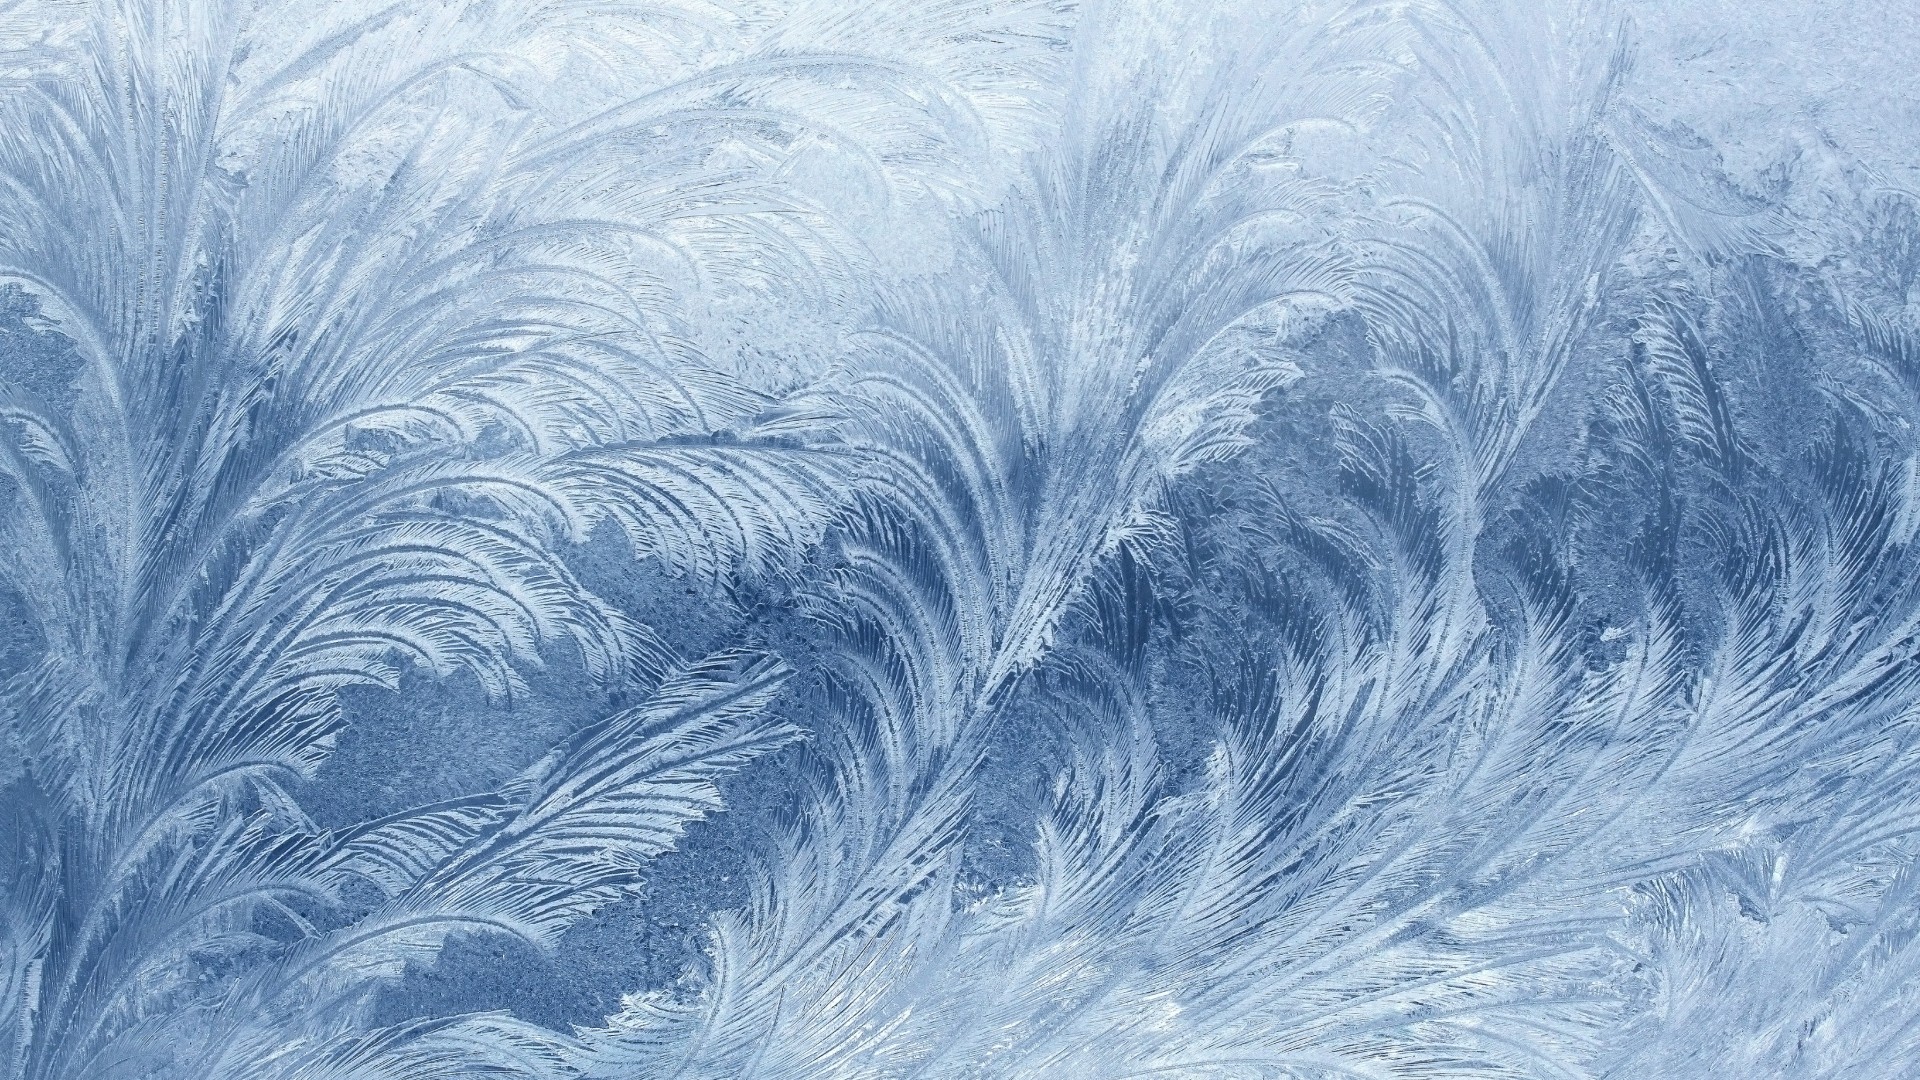 мороз, 4k, 5k, узор, frozen, 4k, 5k wallpaper, pattern, glass, snow, winter (horizontal)